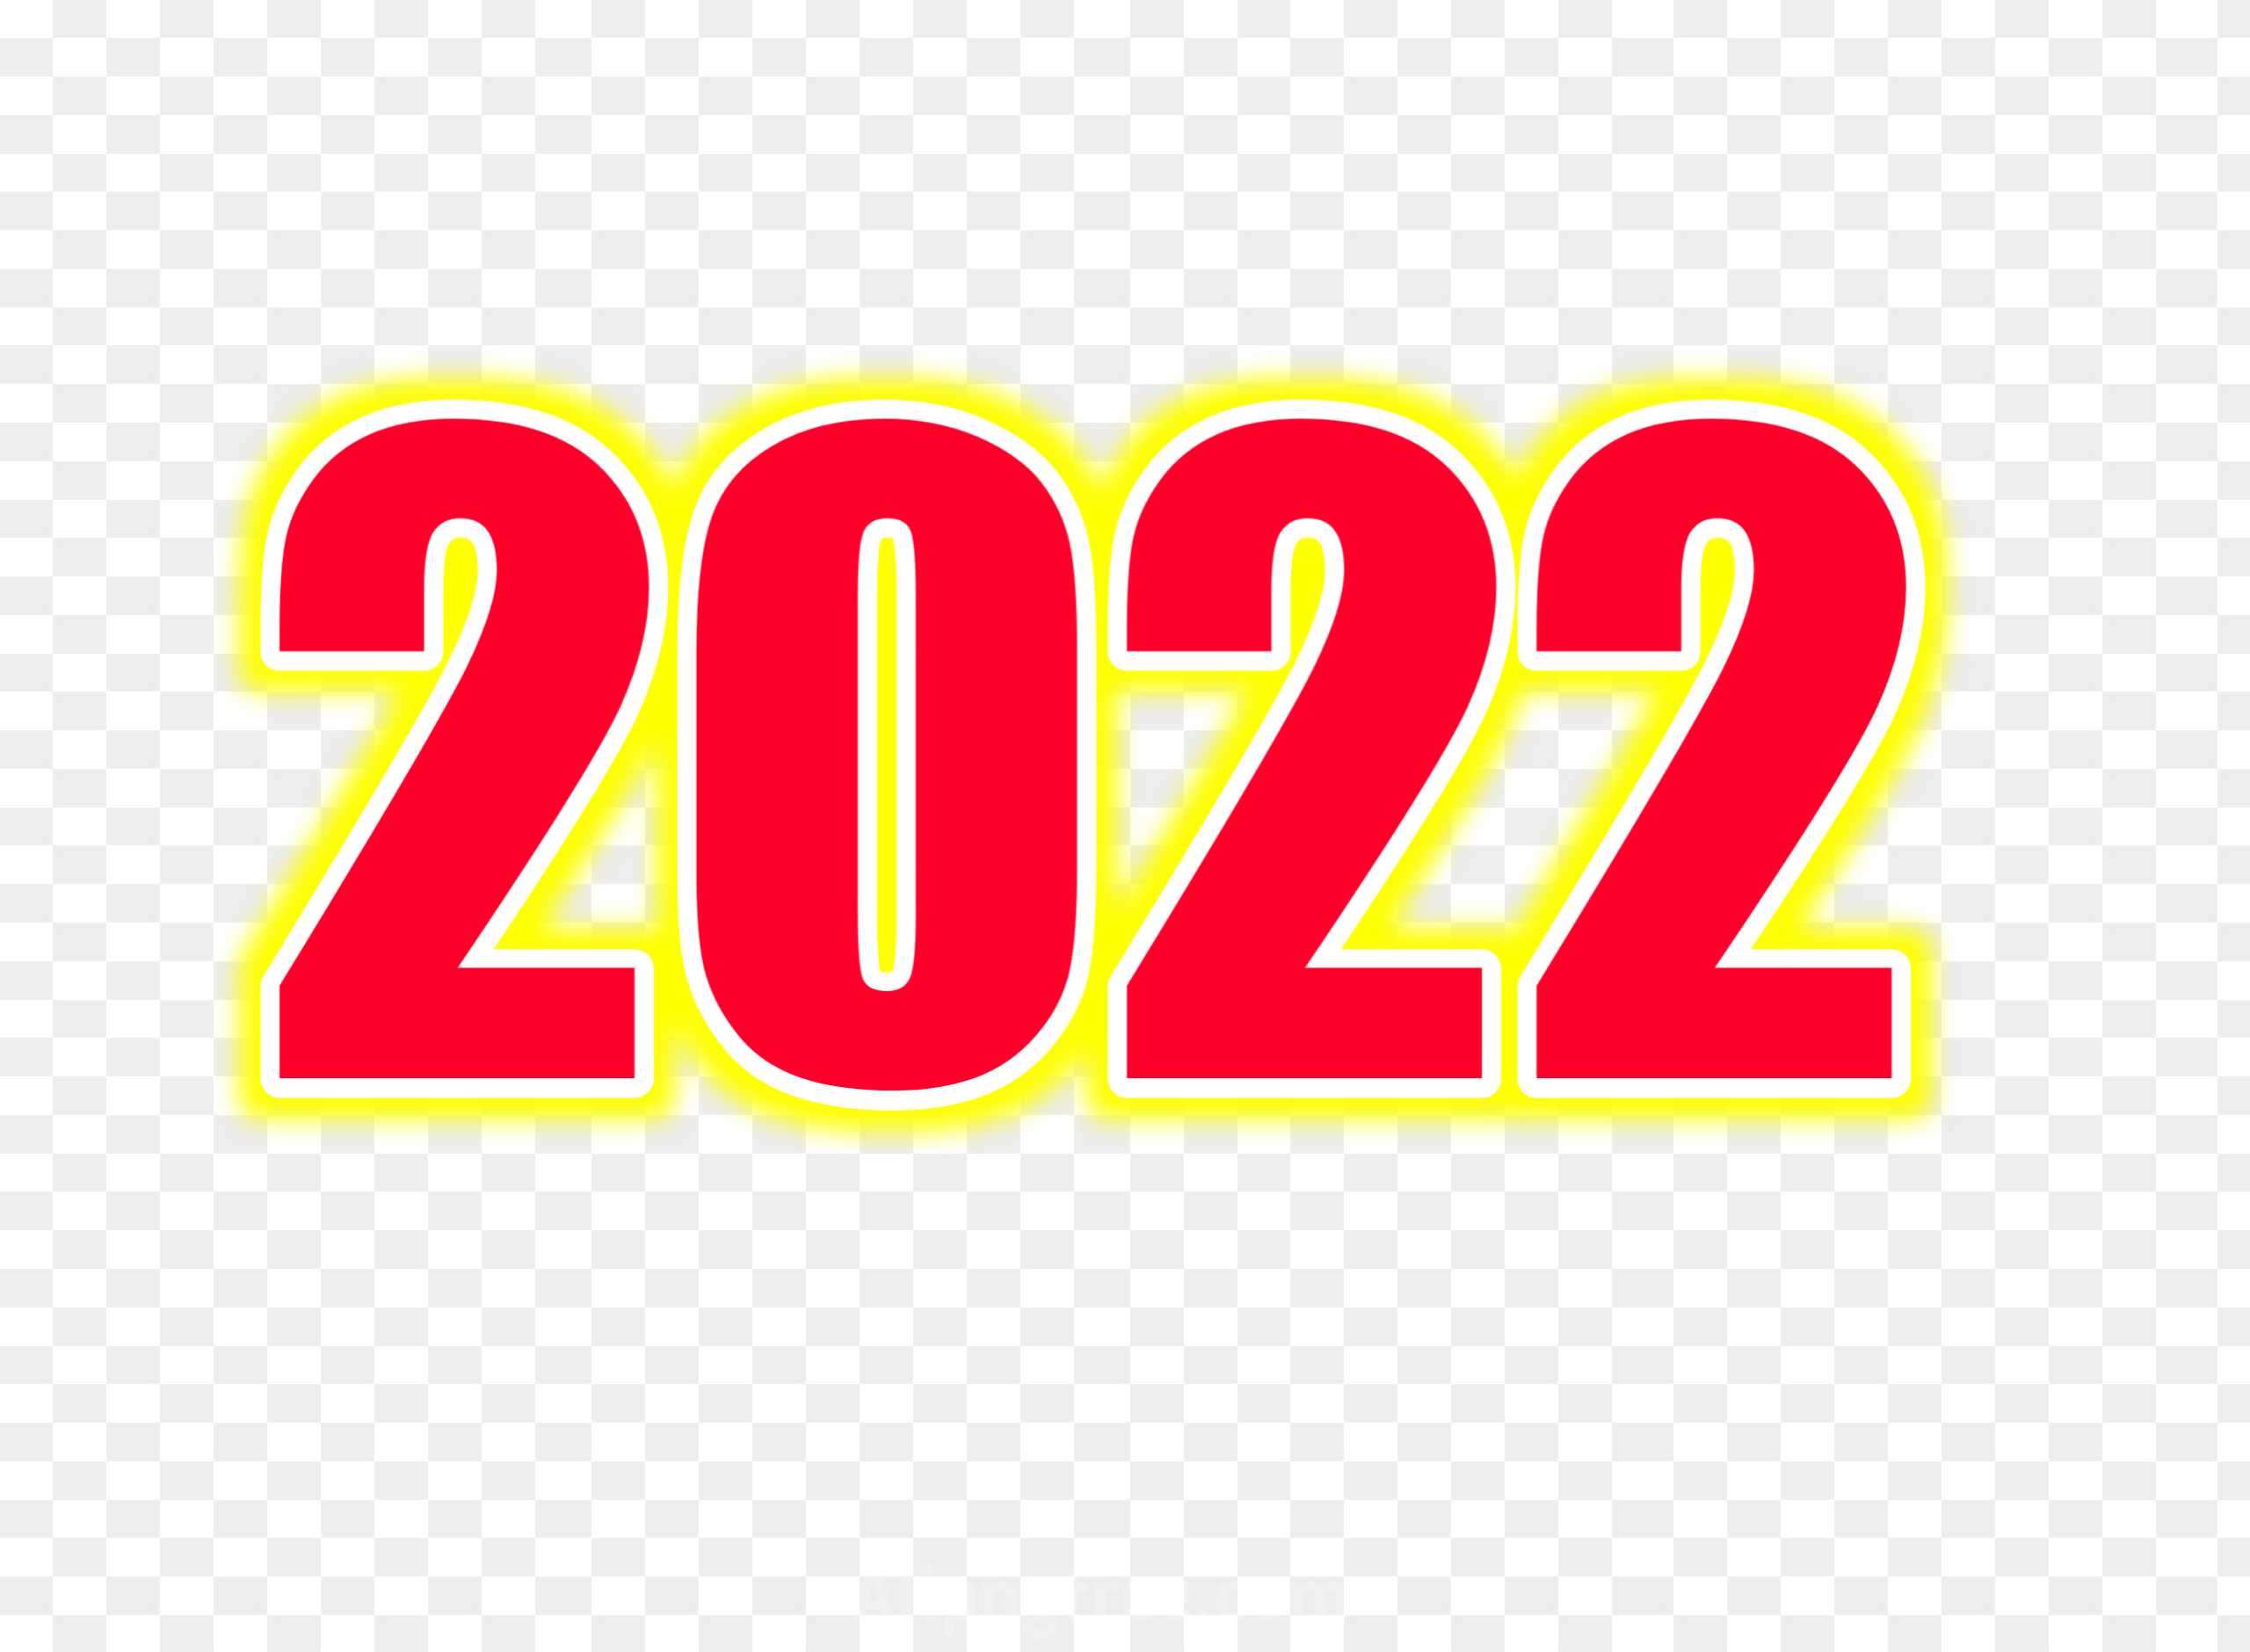 2022 clipart transparent